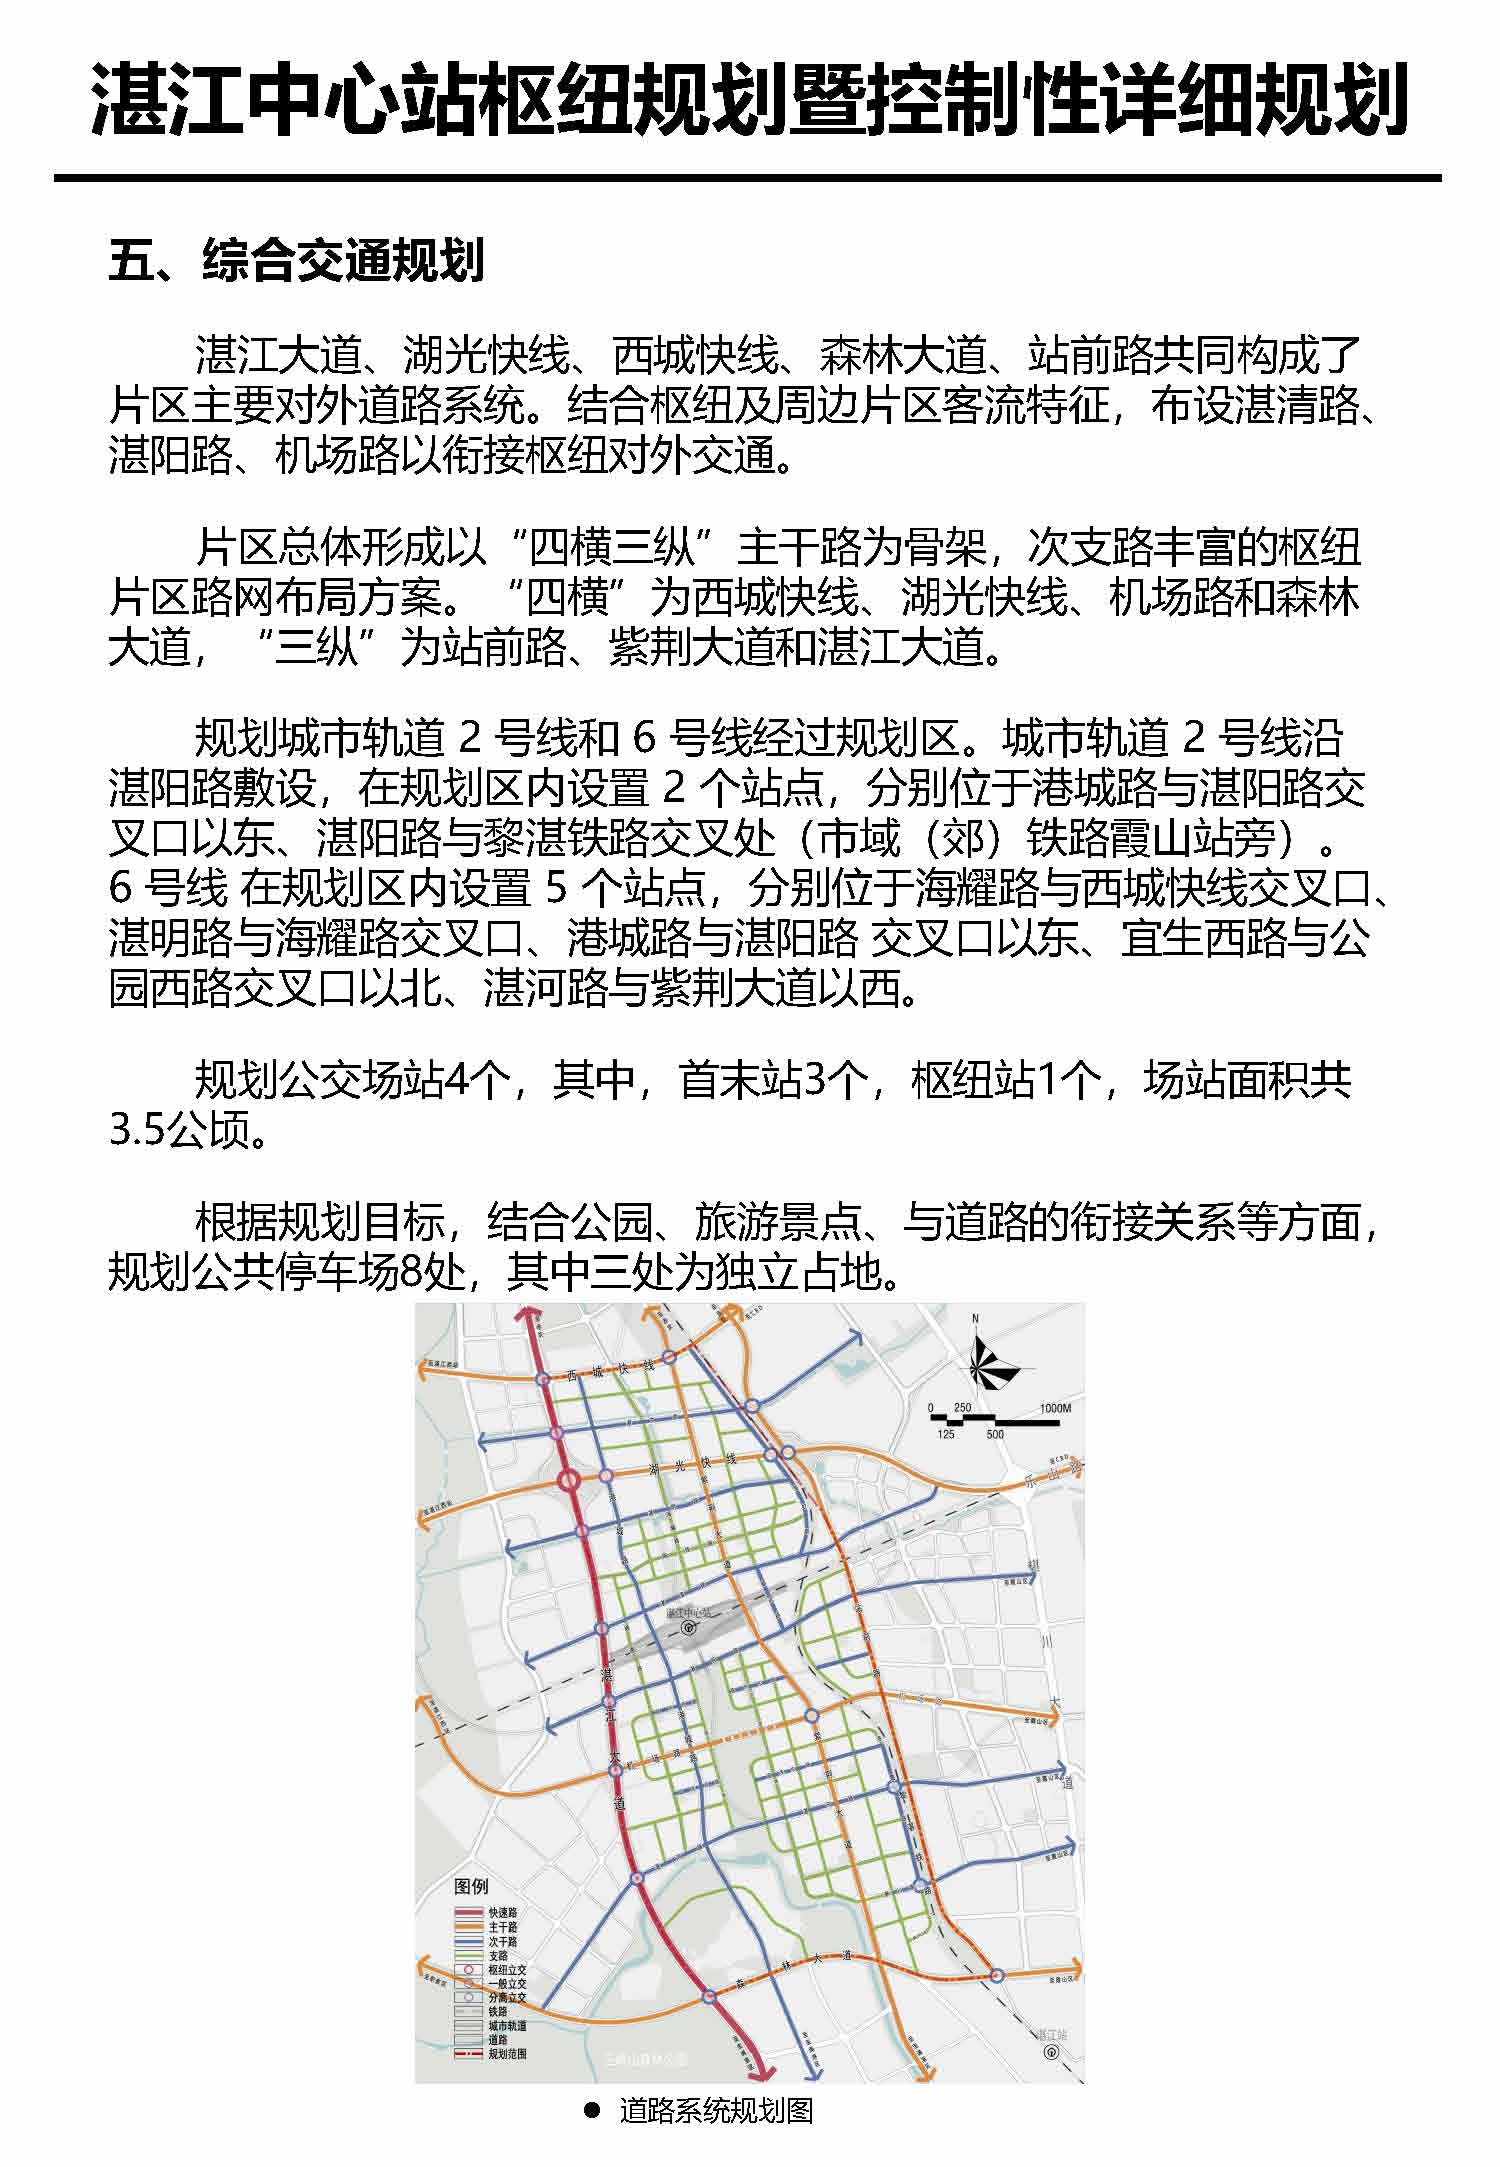 湛江市中心枢纽地区规划暨控制线详细规划报批后公告_页面_7.jpg